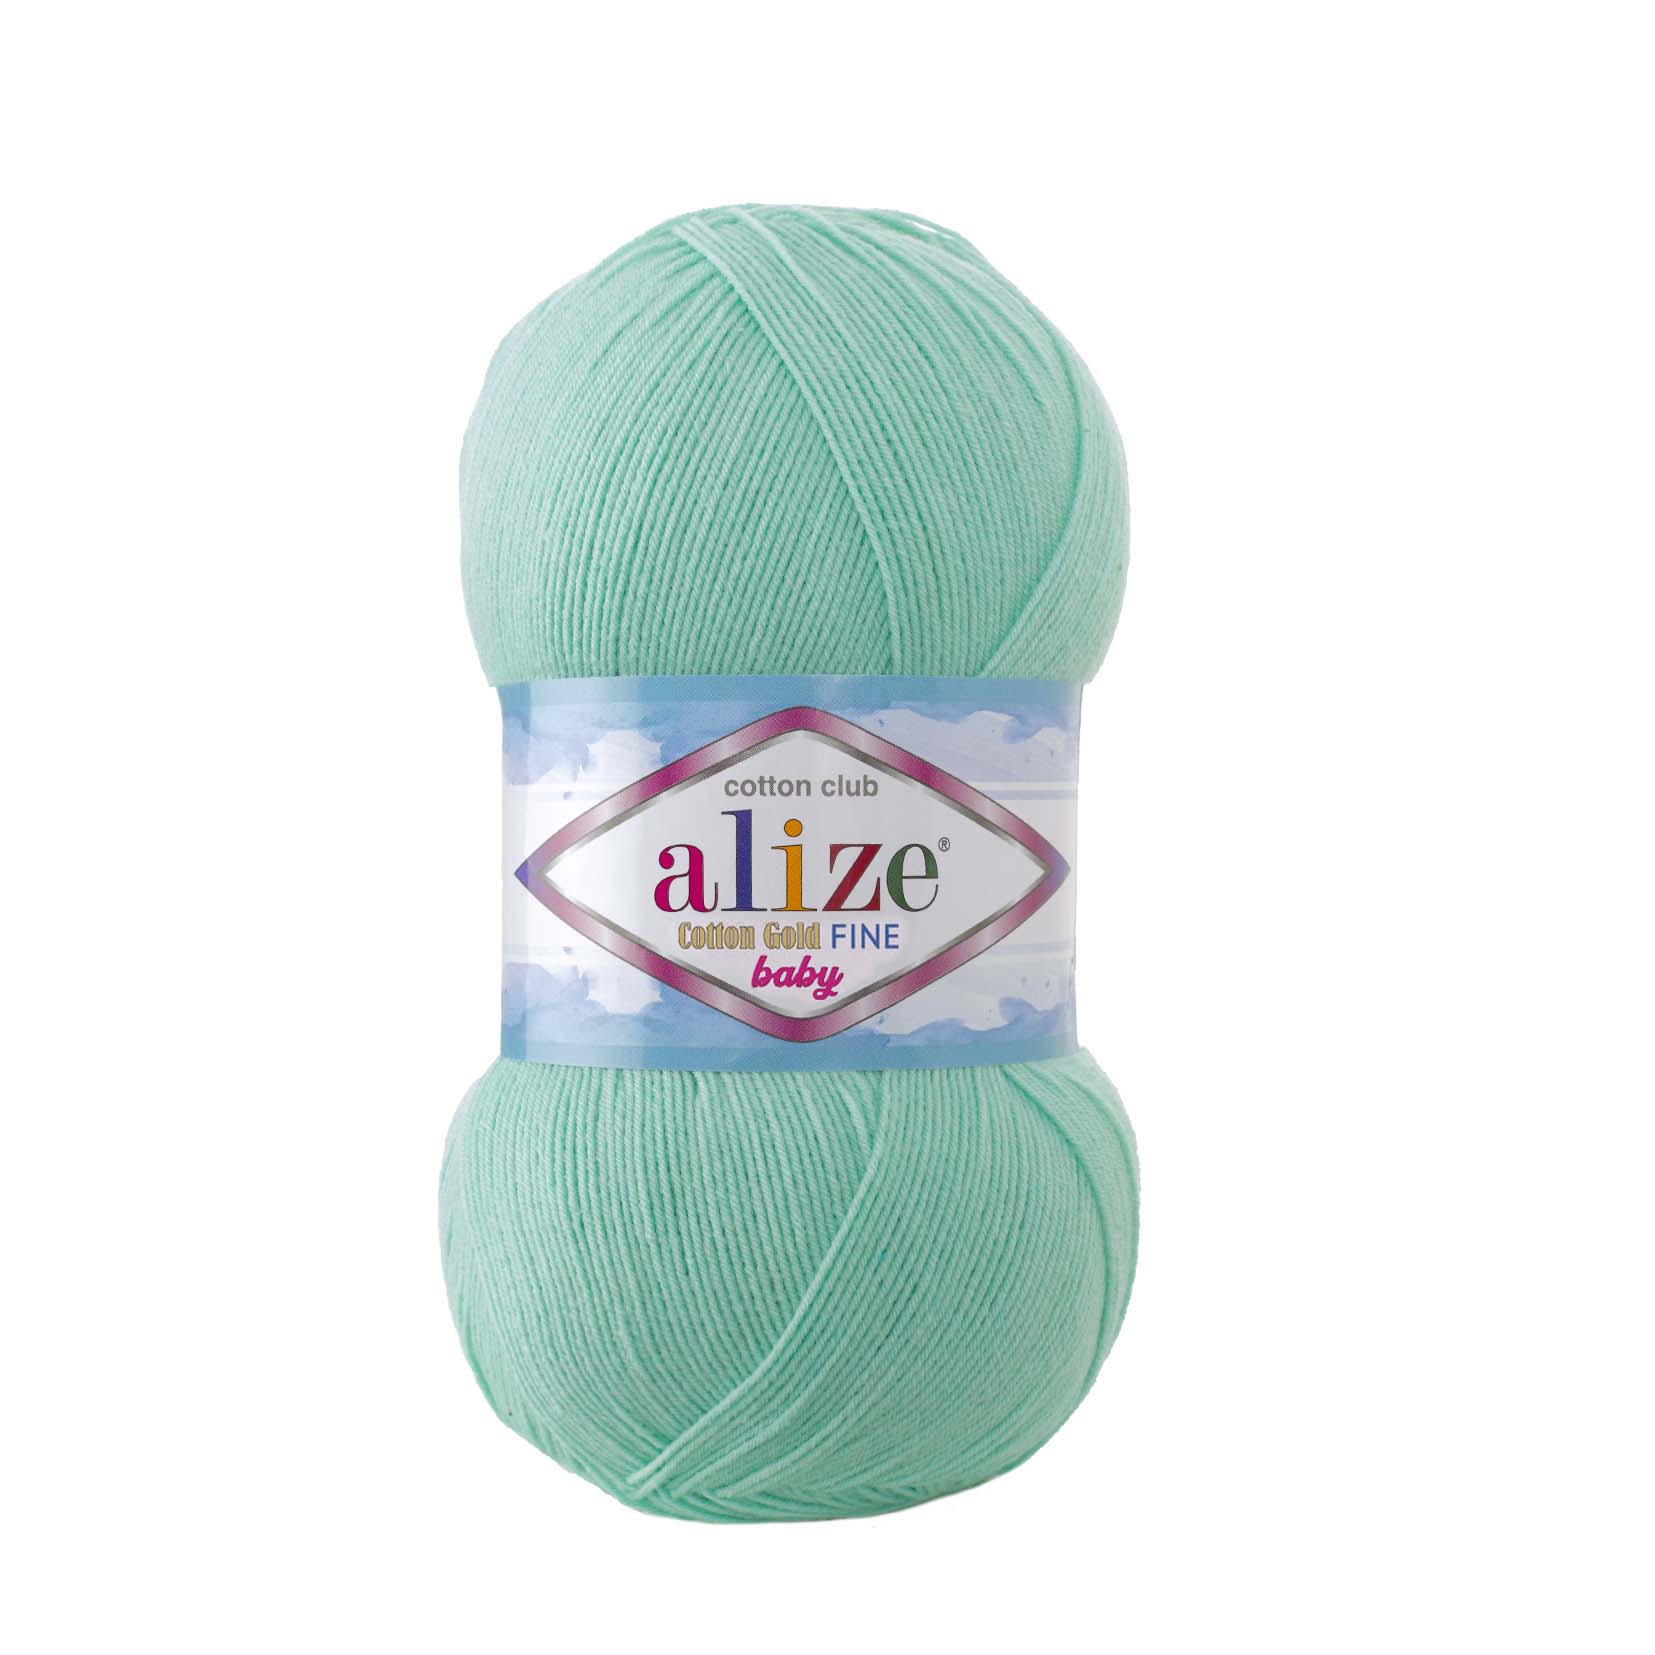  4 Balls Alize Cotton Gold, Crochet Yarn, Knitting Yarn, Baby  Yarn, Acrylic Cotton Yarn